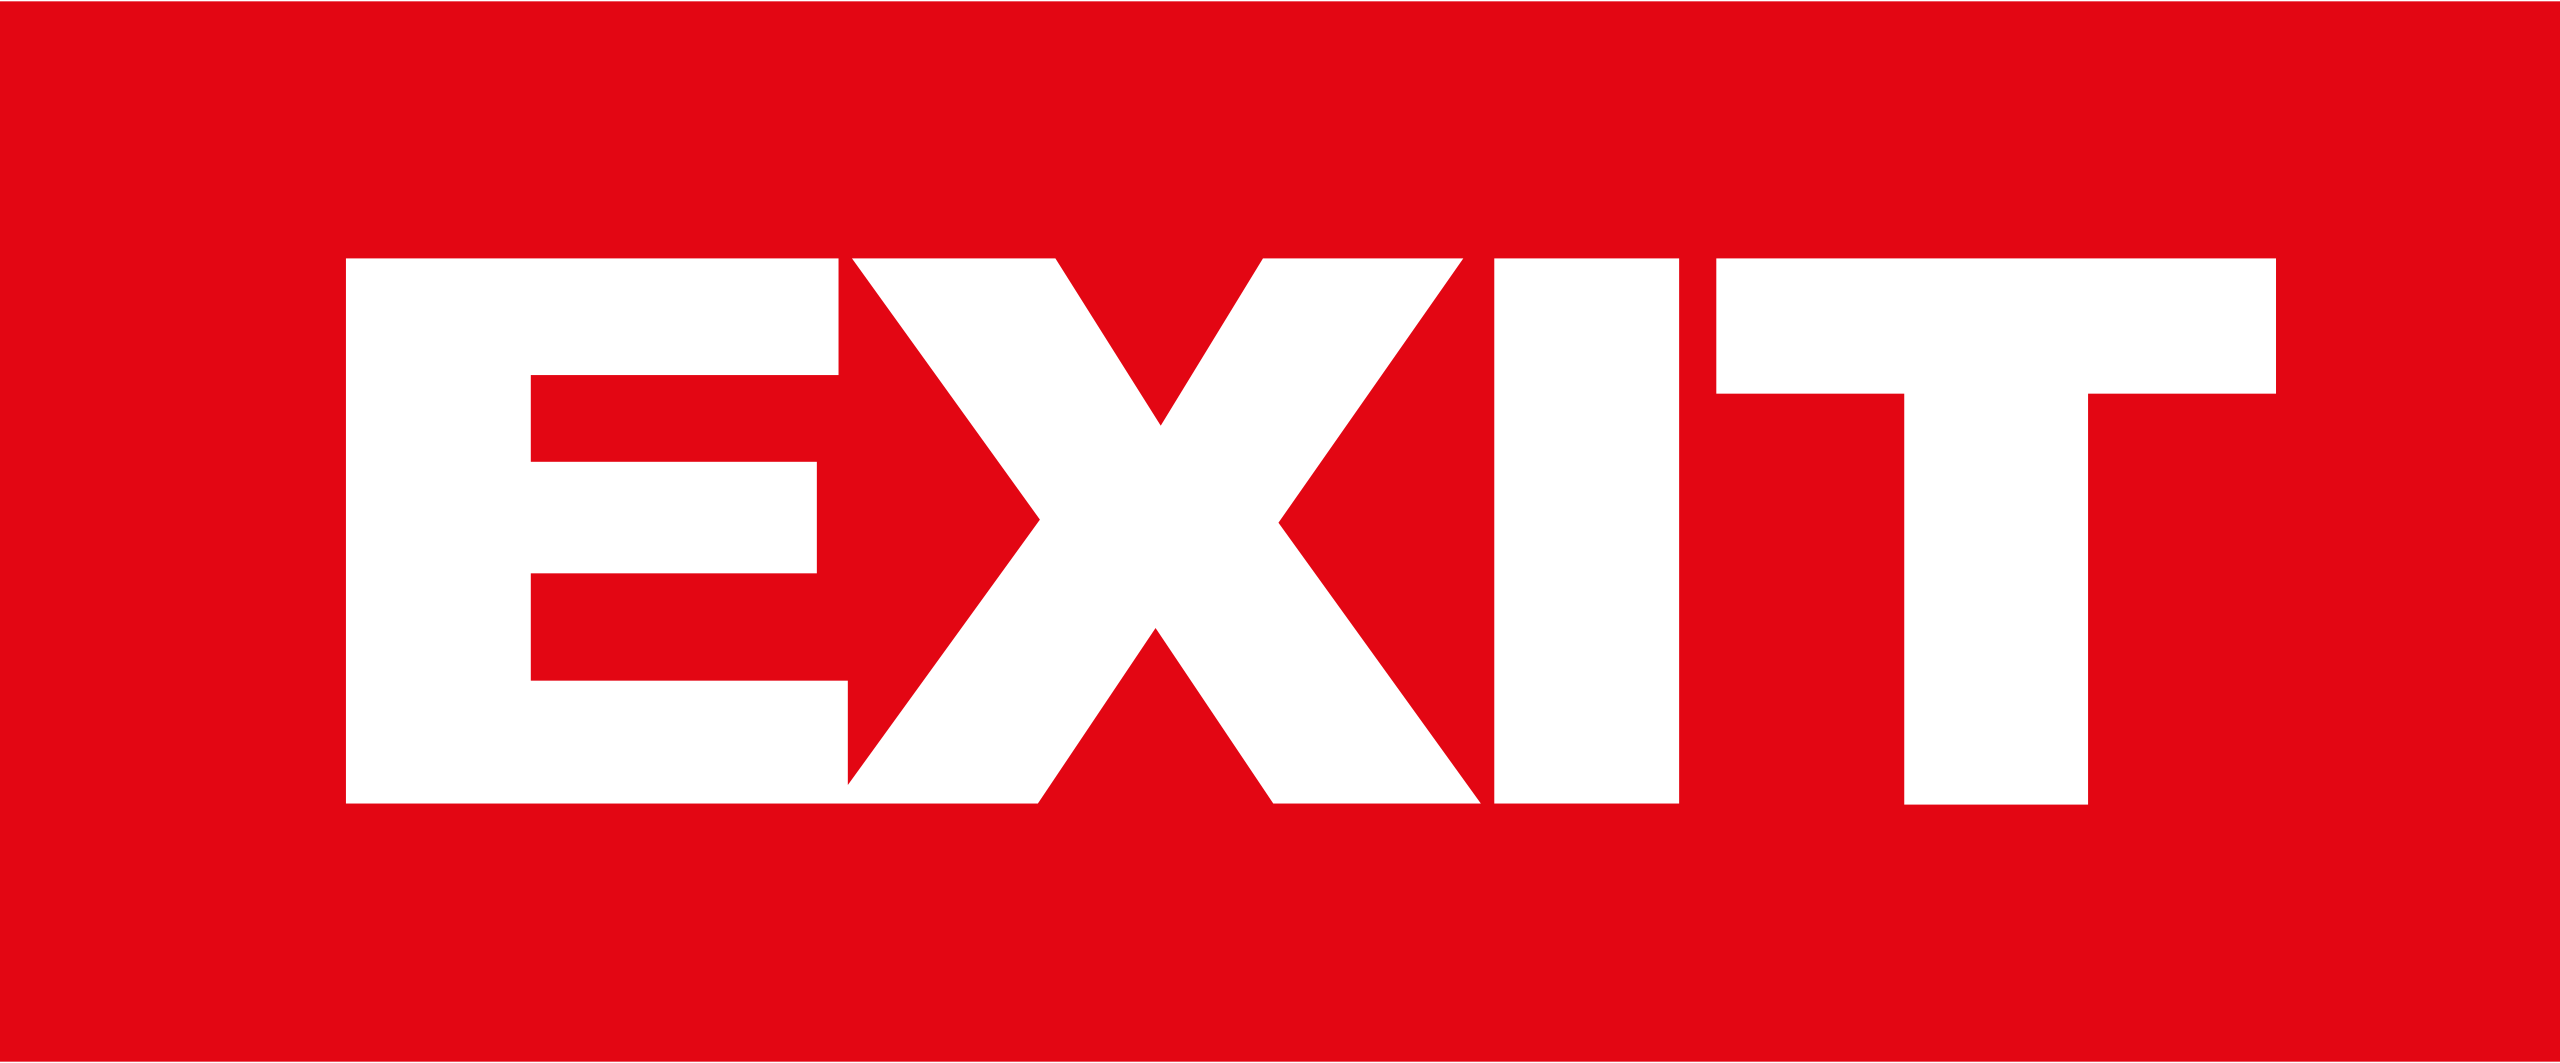 Font Exit